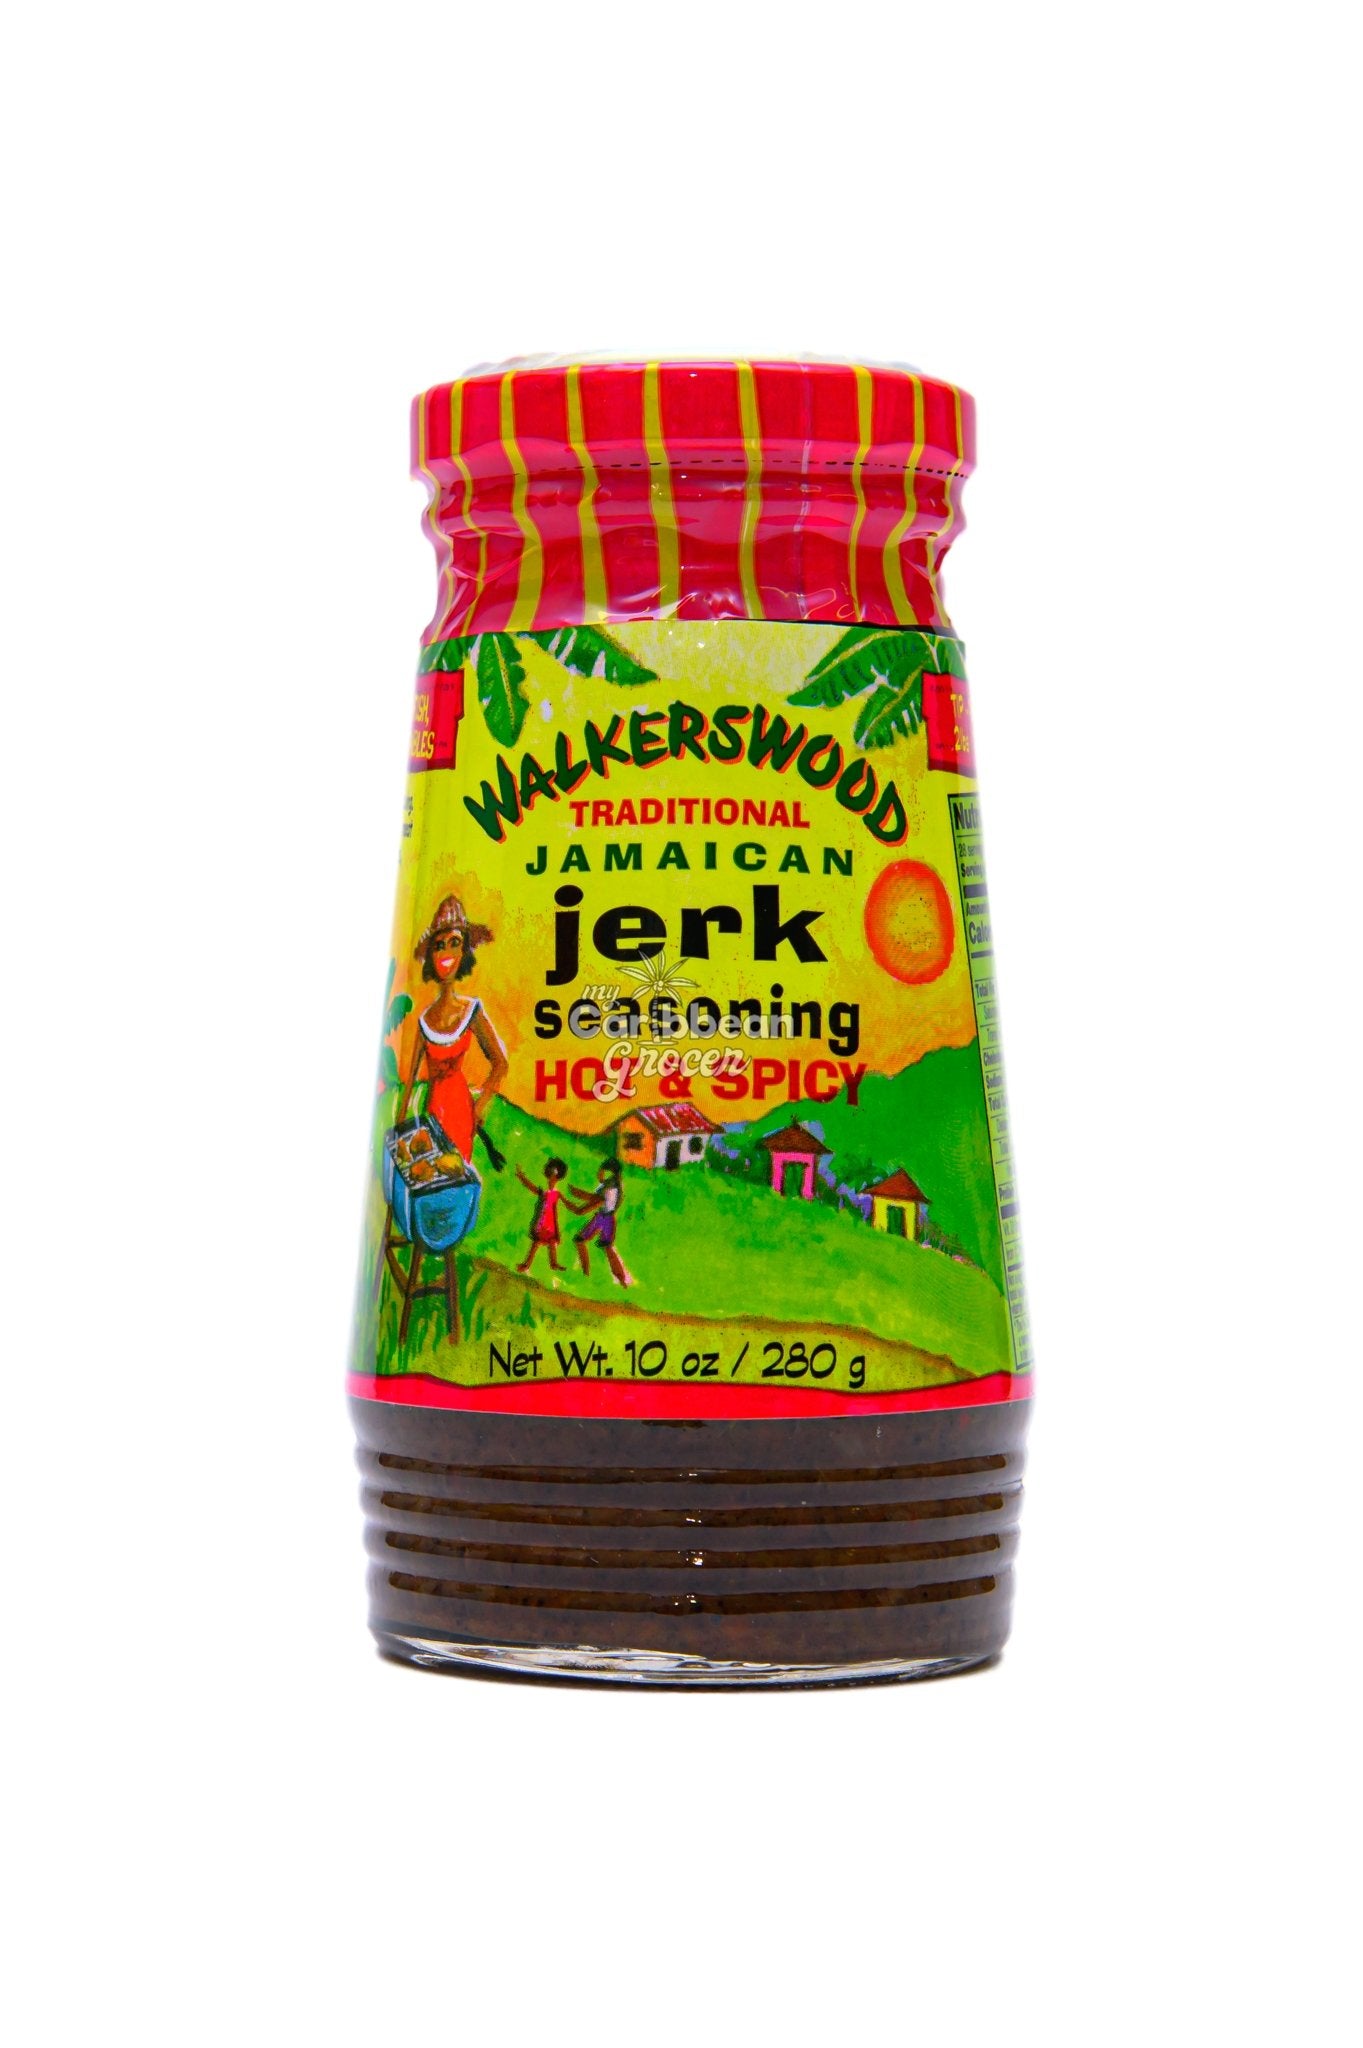 Walkerswood Traditional Jamaican Jerk Seasoning, 10 oz: $6.75